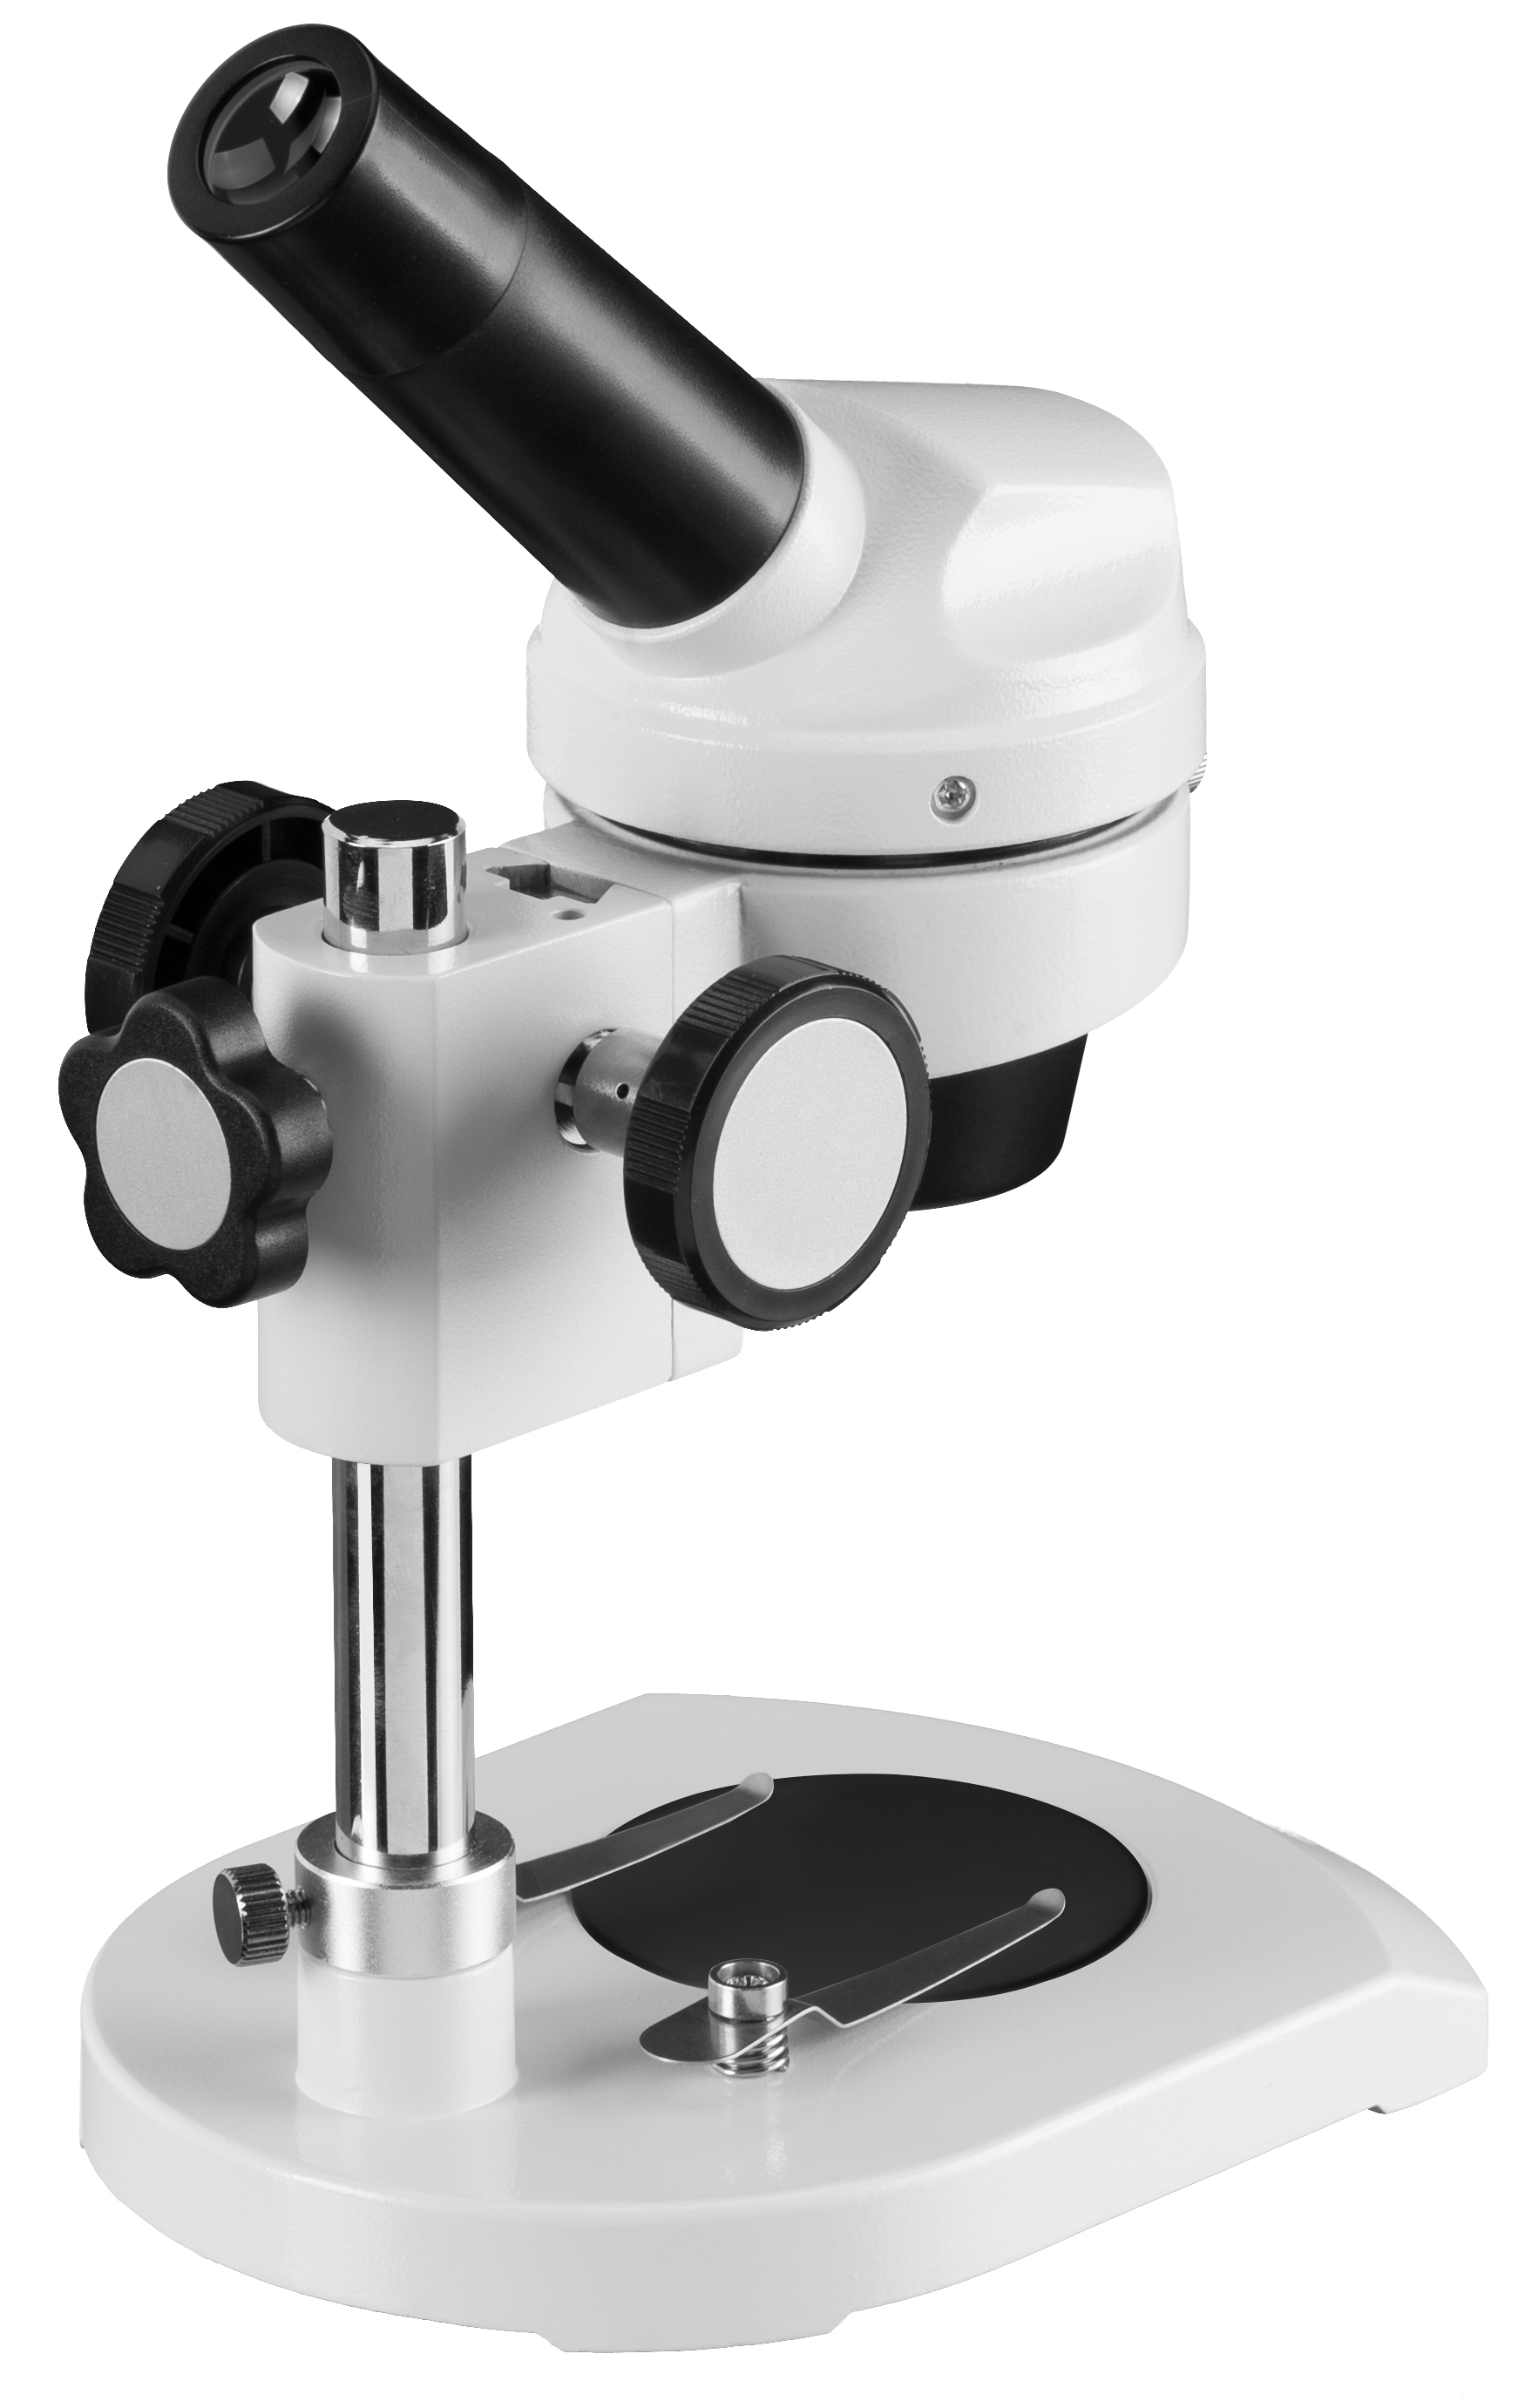 BRESSER JUNIOR Auflichtmikroskop mit 20-facher Vergrößerung und stabilem Gehäuse aus Metall